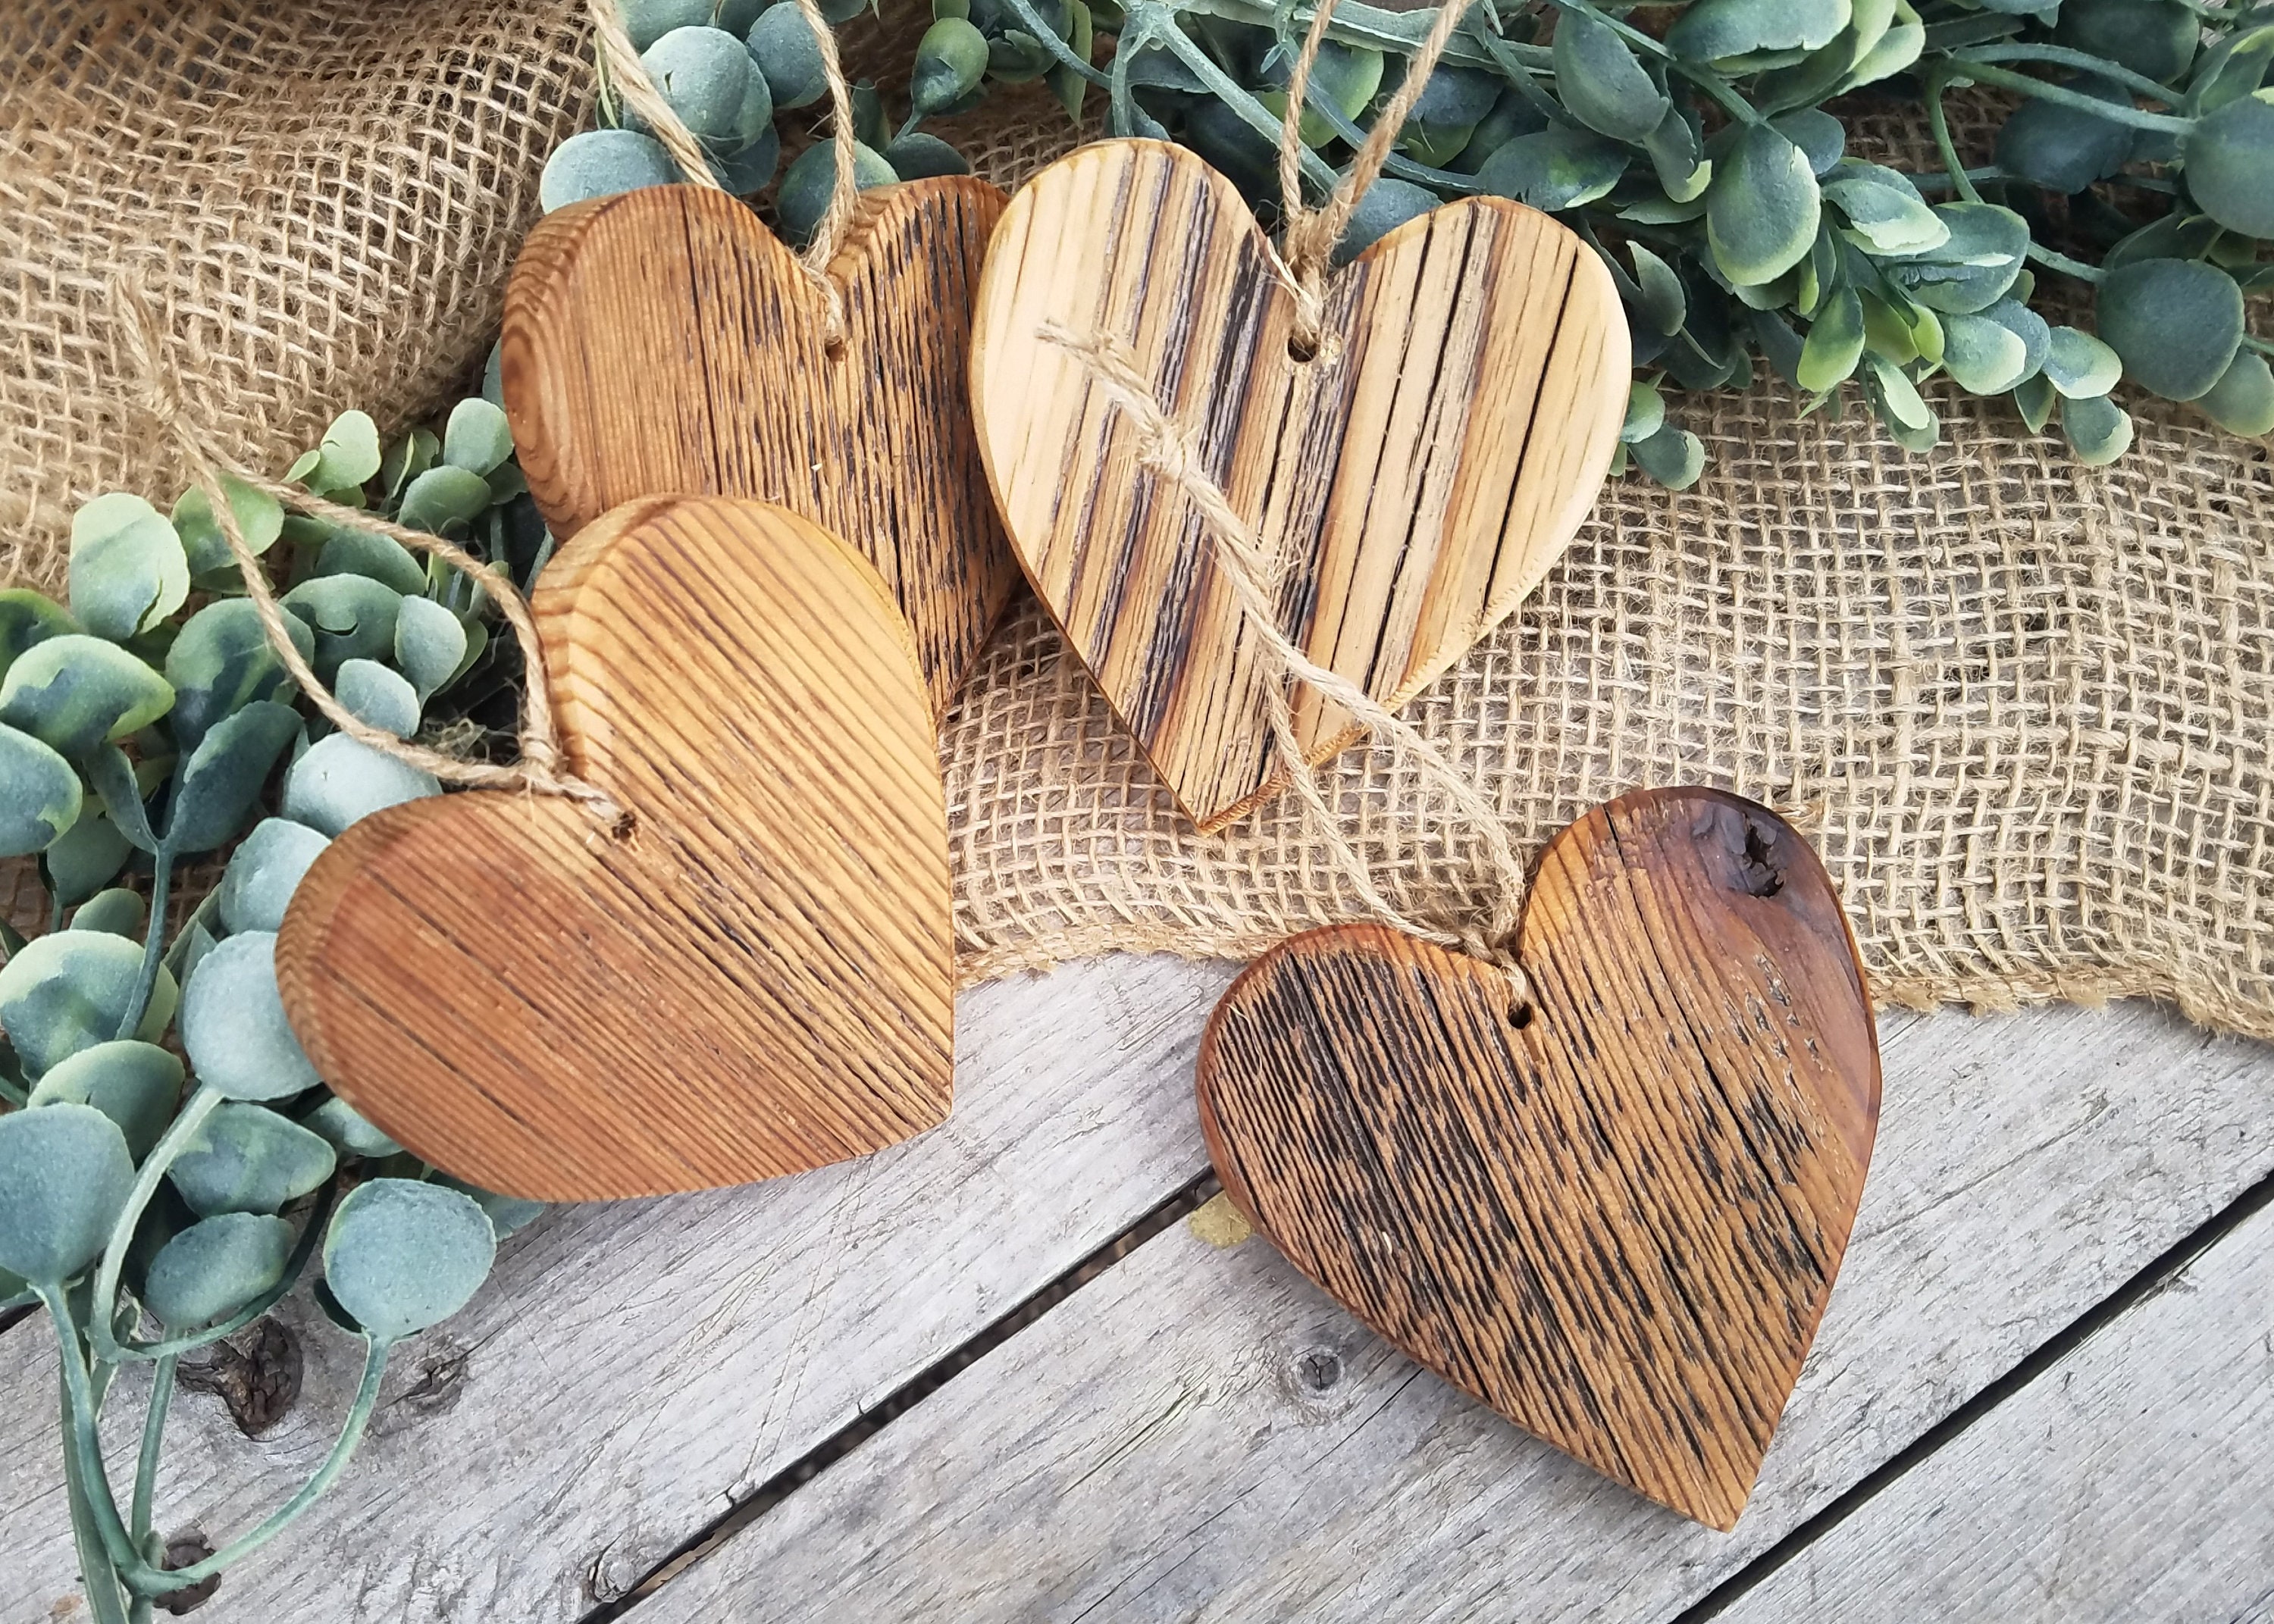 Barn Wood Heart Ornament, Wedding Wood Hearts Ornament, Rustic Wedding  Hearts, Heart Ornaments, Tier Tray Hearts, Barn Wood Hearts -  Norway